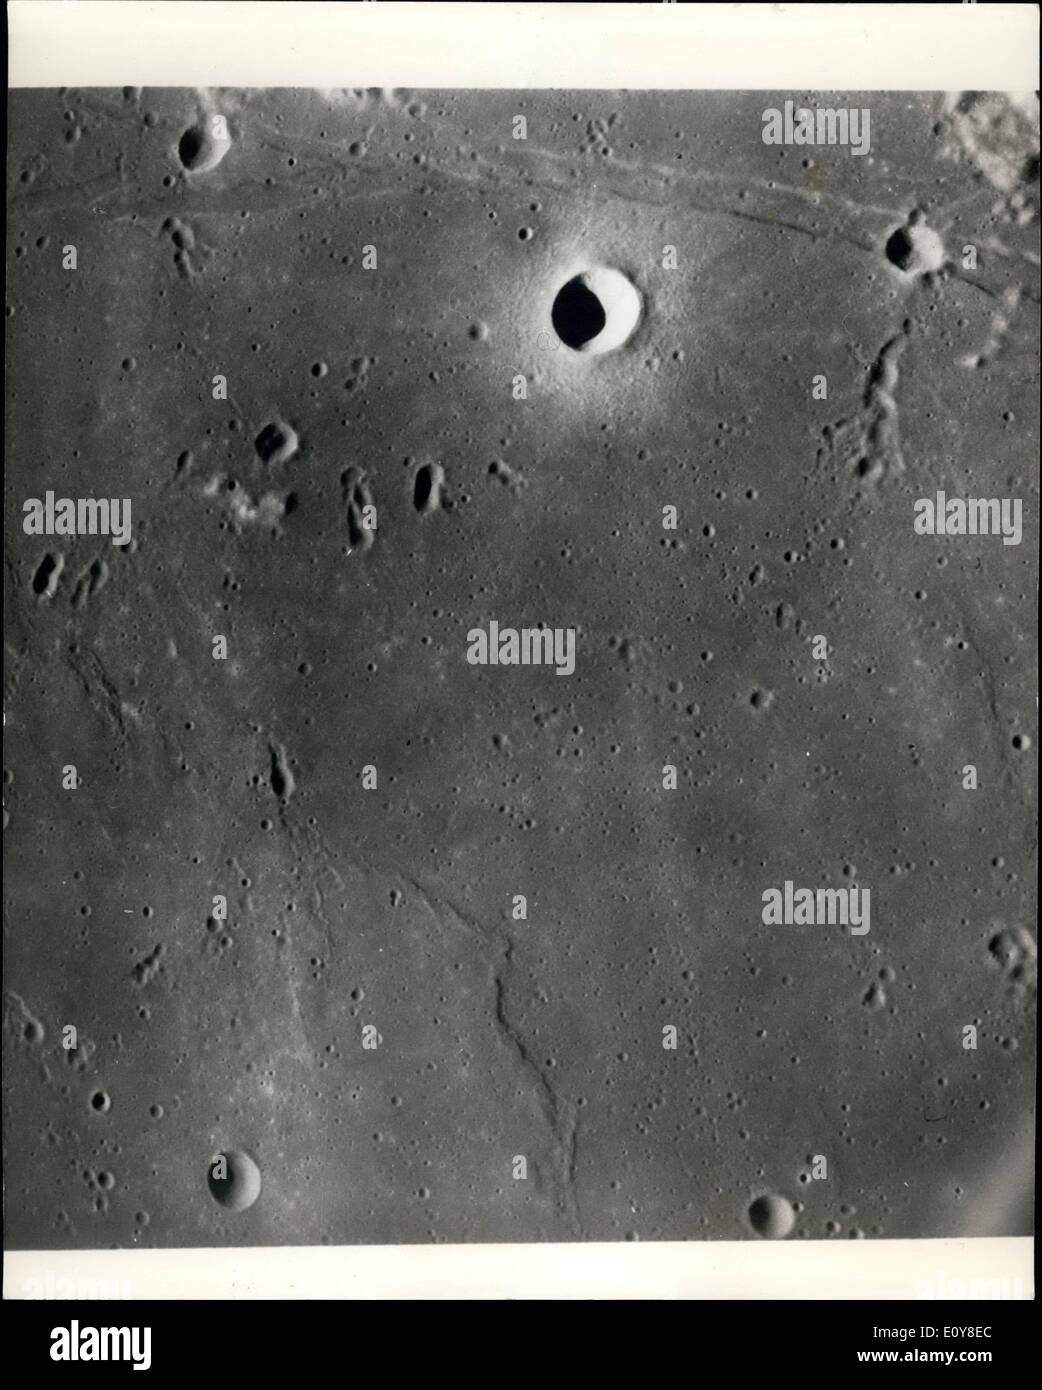 05 maggio 1969 - la luna di terreno come si vede dall'Apollo 10 astronauti; questo quasi verticale fotografia scattata da Apollo 10 il comando e moduli di servizio presenta caratteristiche tipiche del Mare della Tranquillità vicino Apollo landing site 2. (Fermo immagine con spiccata caratteristica lineare parallelo al margine sinistro) La proposta di area di atterraggio per Apollo II (Lunar lading sito 2) è relativamente liscia maria area nel quadrante superiore destro della zona fotografata. Apollo 10 percorsa dalla parte inferiore alla parte superiore dell'immagine Foto Stock